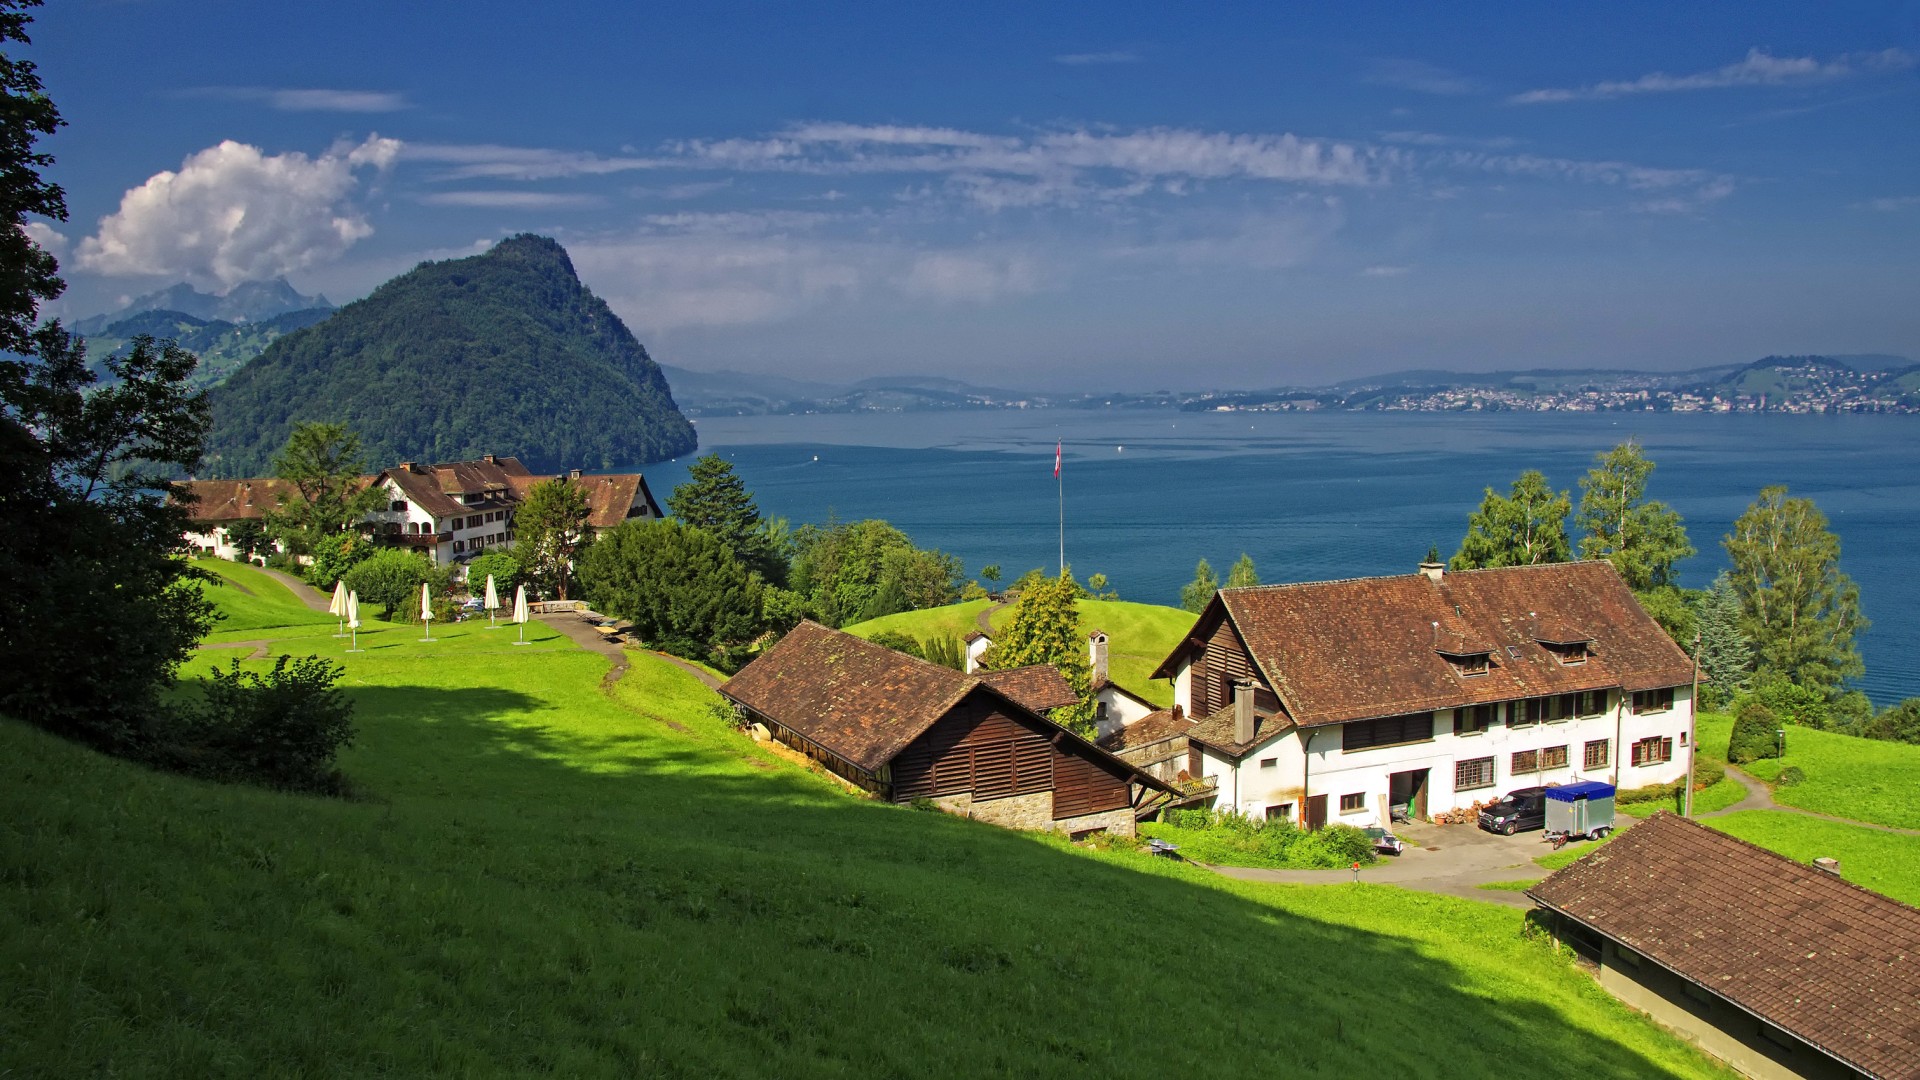 瑞士 盖尔绍 琉森湖 山 绿色草地 房屋 风景桌面壁纸 风景壁纸 壁纸下载 彼岸桌面